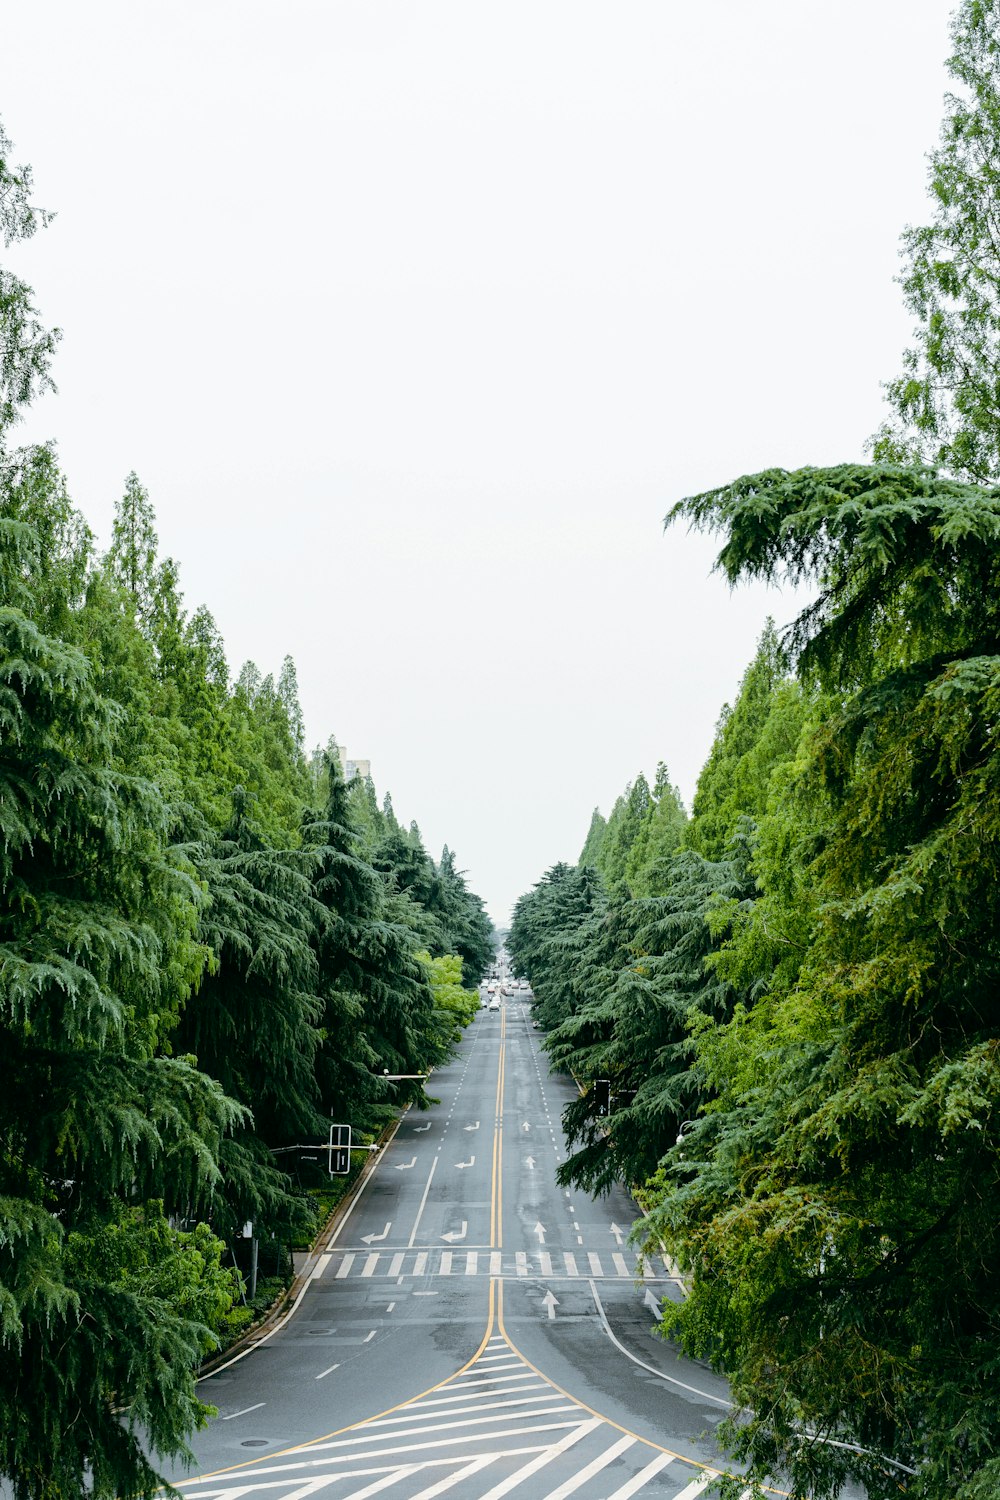 Eine lange, leere Straße, umgeben von grünen Bäumen